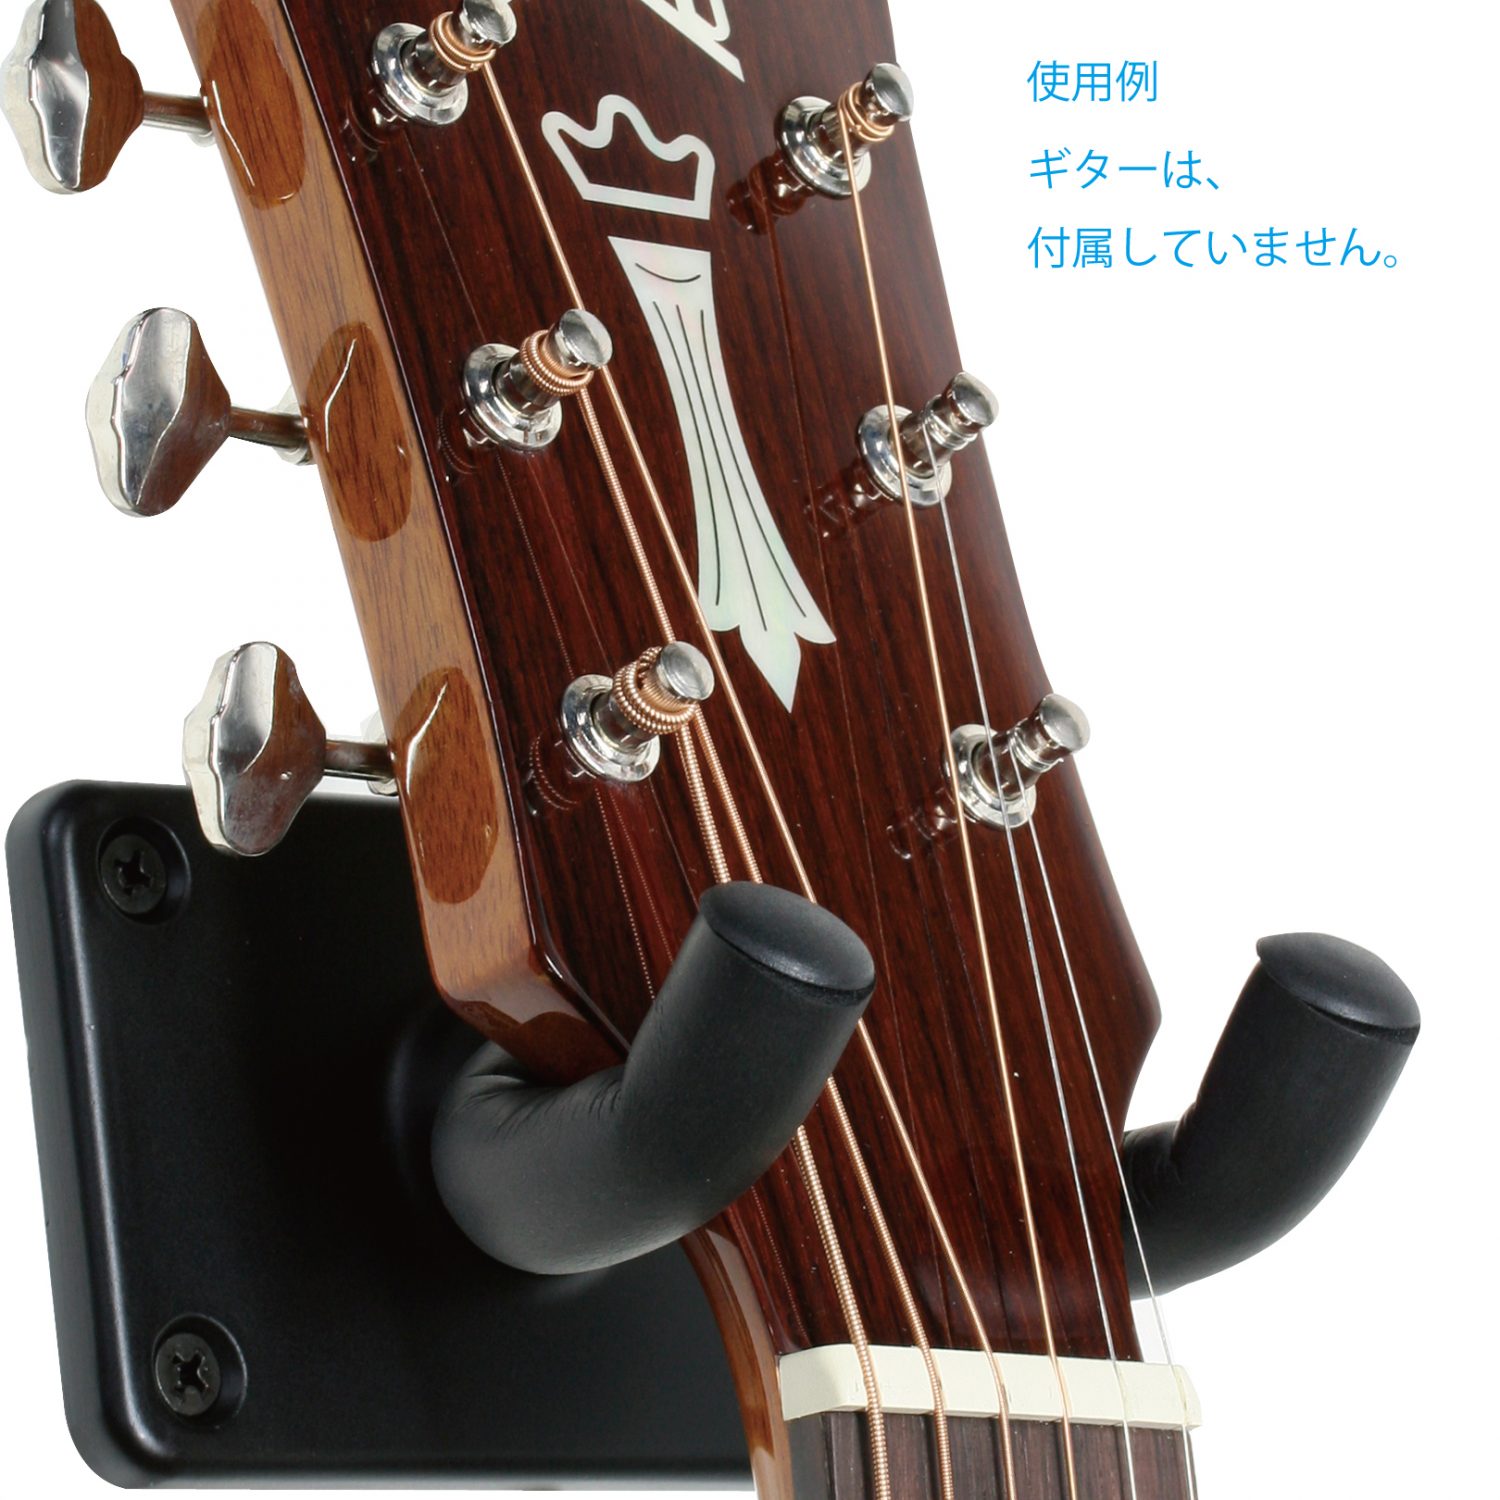 540円 【メール便なら送料無料】 KIKUTANI GH-525 ギターハンガー 2個セット